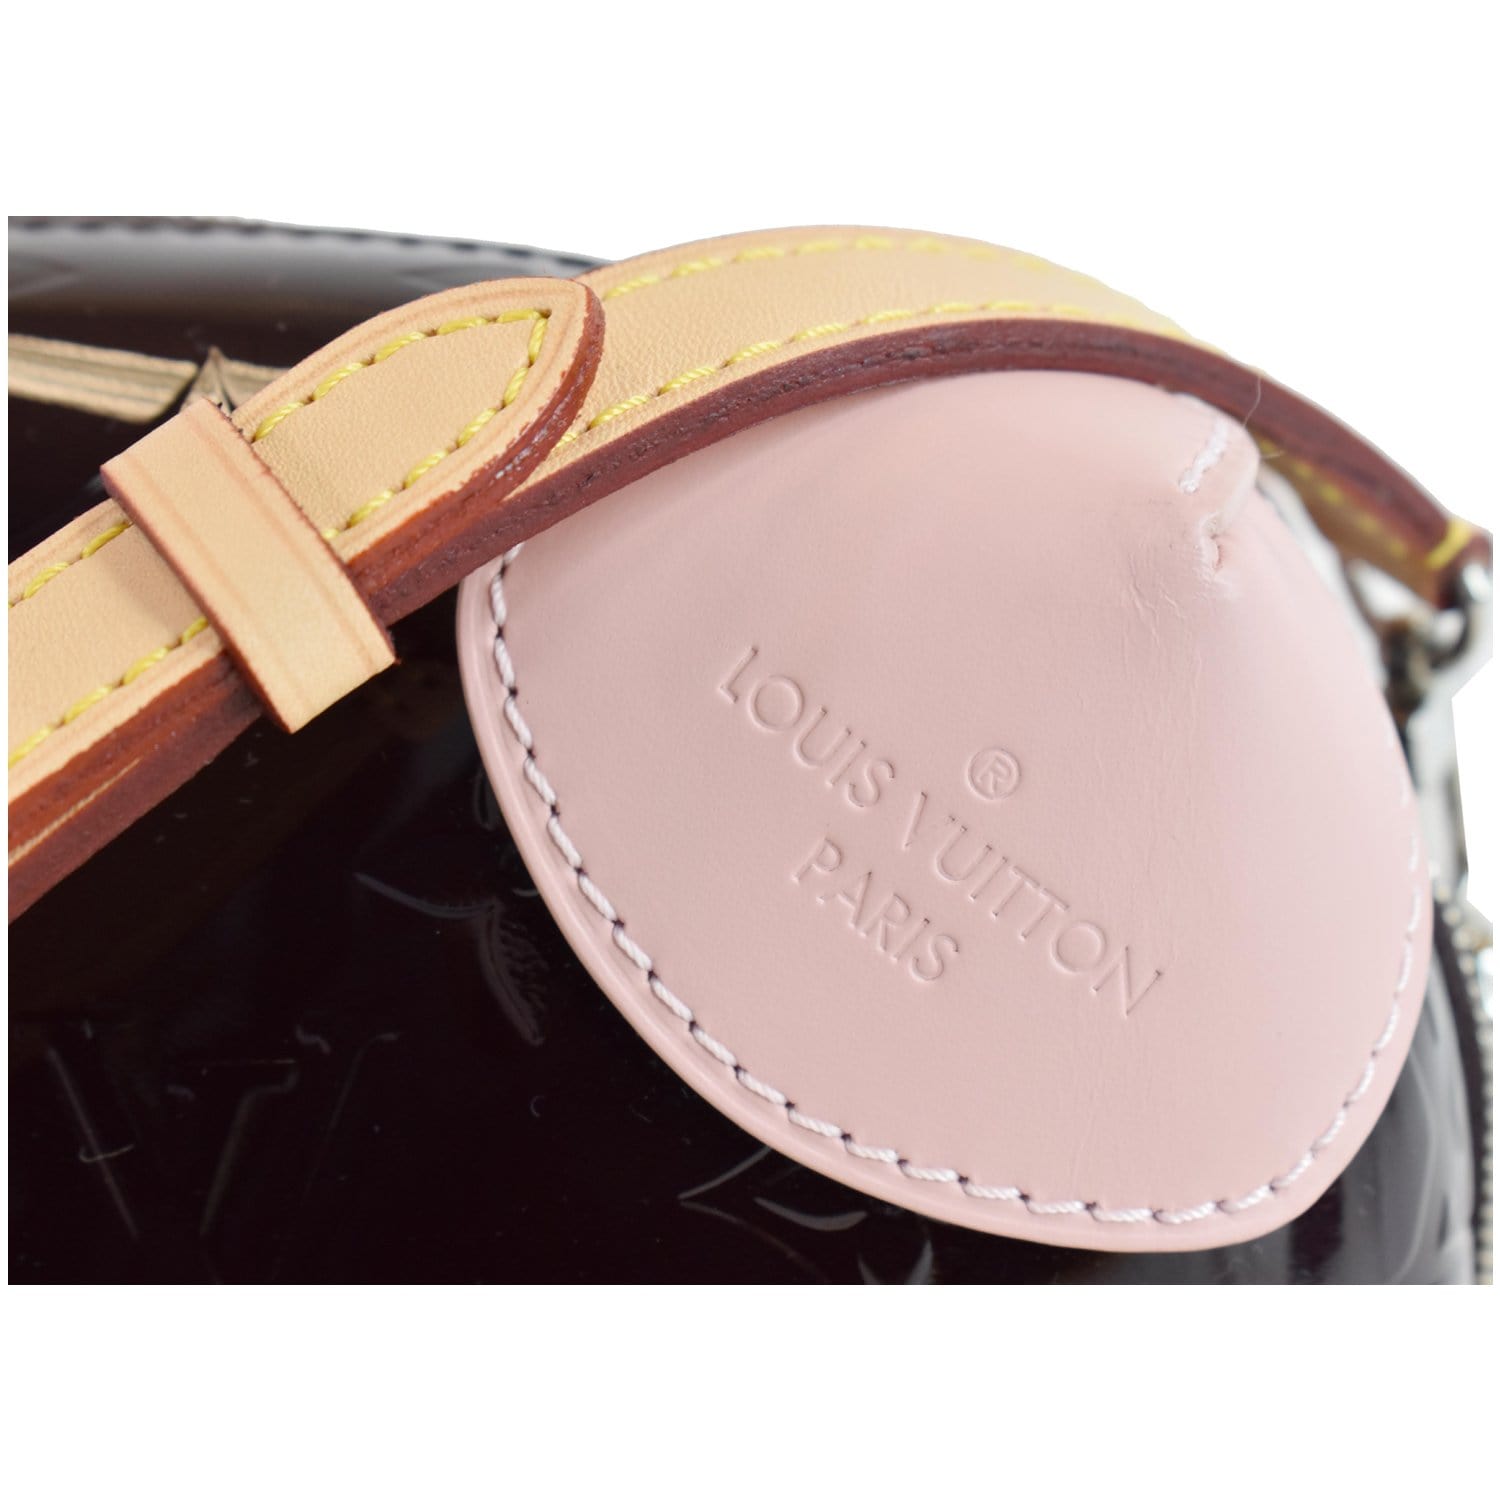 Louis Vuitton, Bags, Louis Vuitton Shoulder Bag Diagonal Monogram Verni  Clutch Anna Patent Leather Re